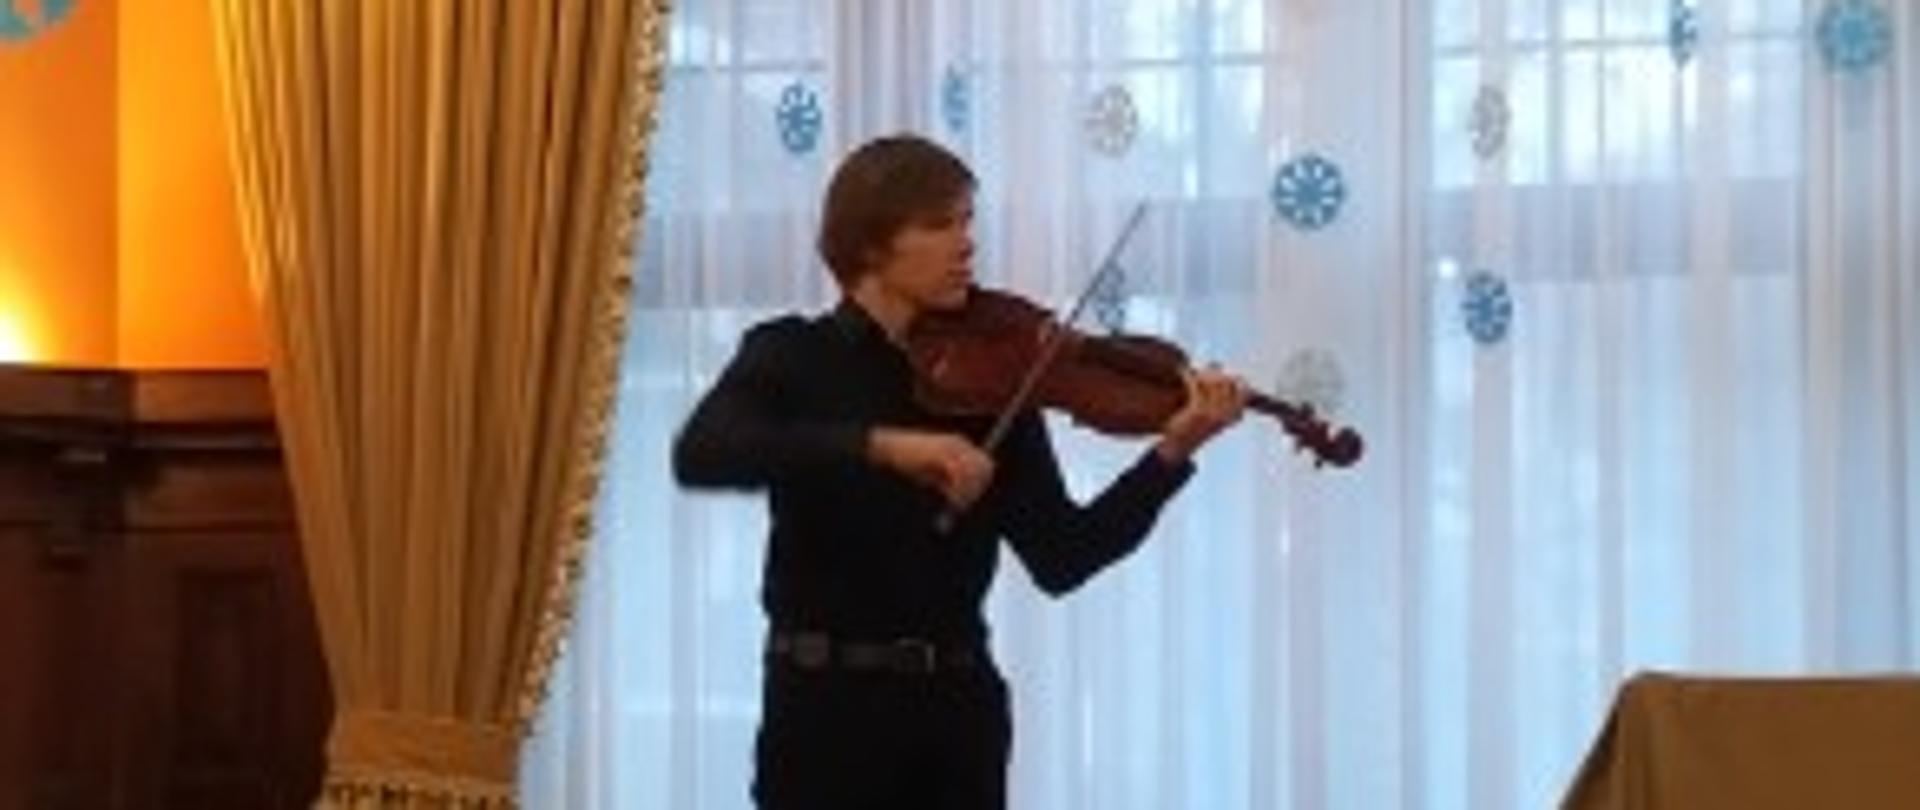 Na zdjęciu uczeń gra na skrzypcach, w tle okno i dekoracja